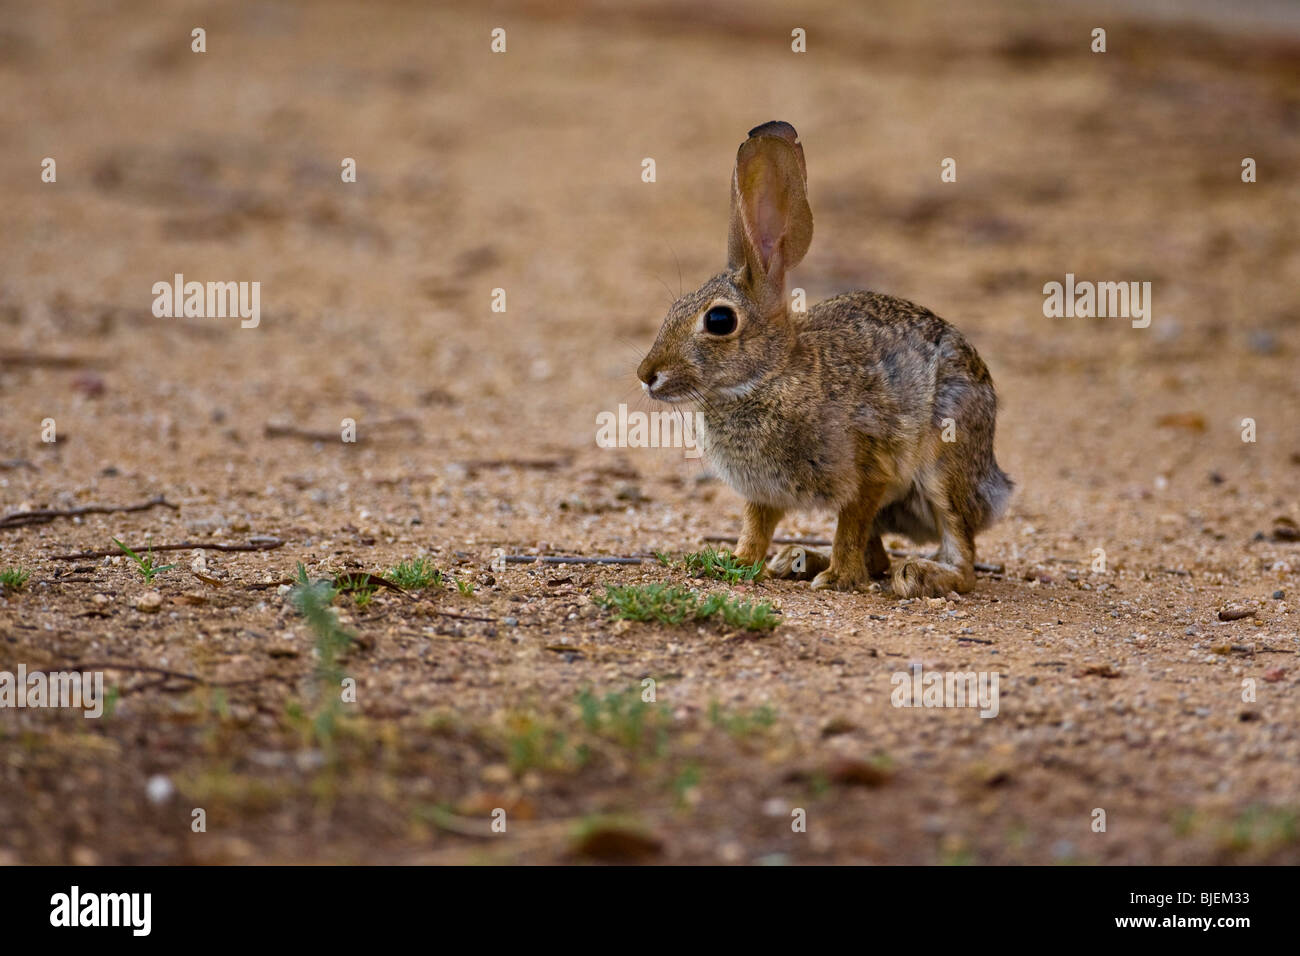 Kaninchen Sie auf Sandboden, Phoenix, Arizona, Seitenansicht Stockfoto